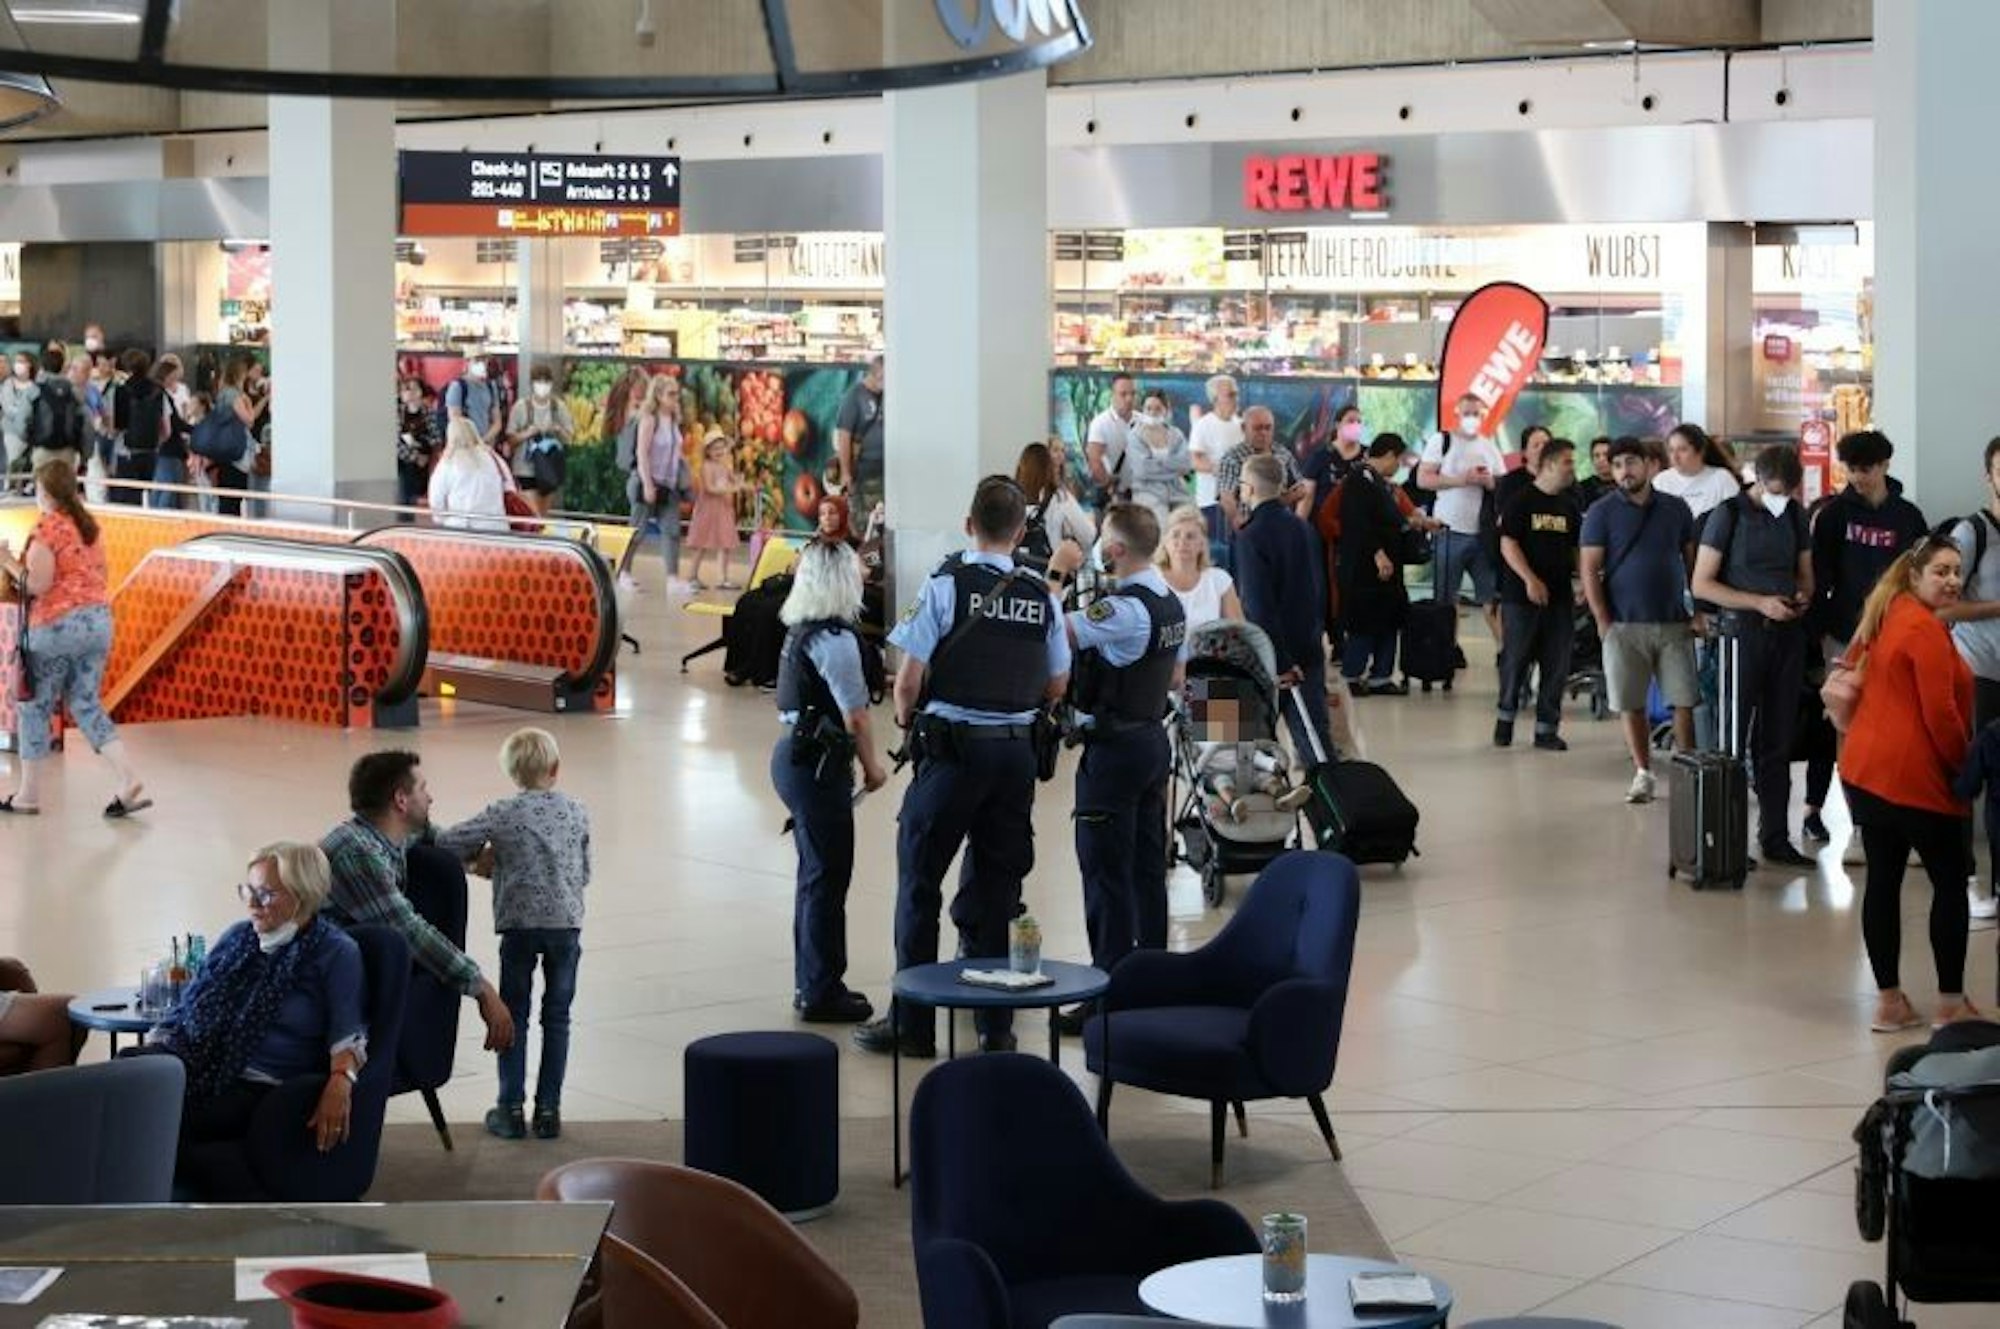 Menschen gehen durch den Flughafen Köln/Bonn, es sind auch Polizisten zu sehen.